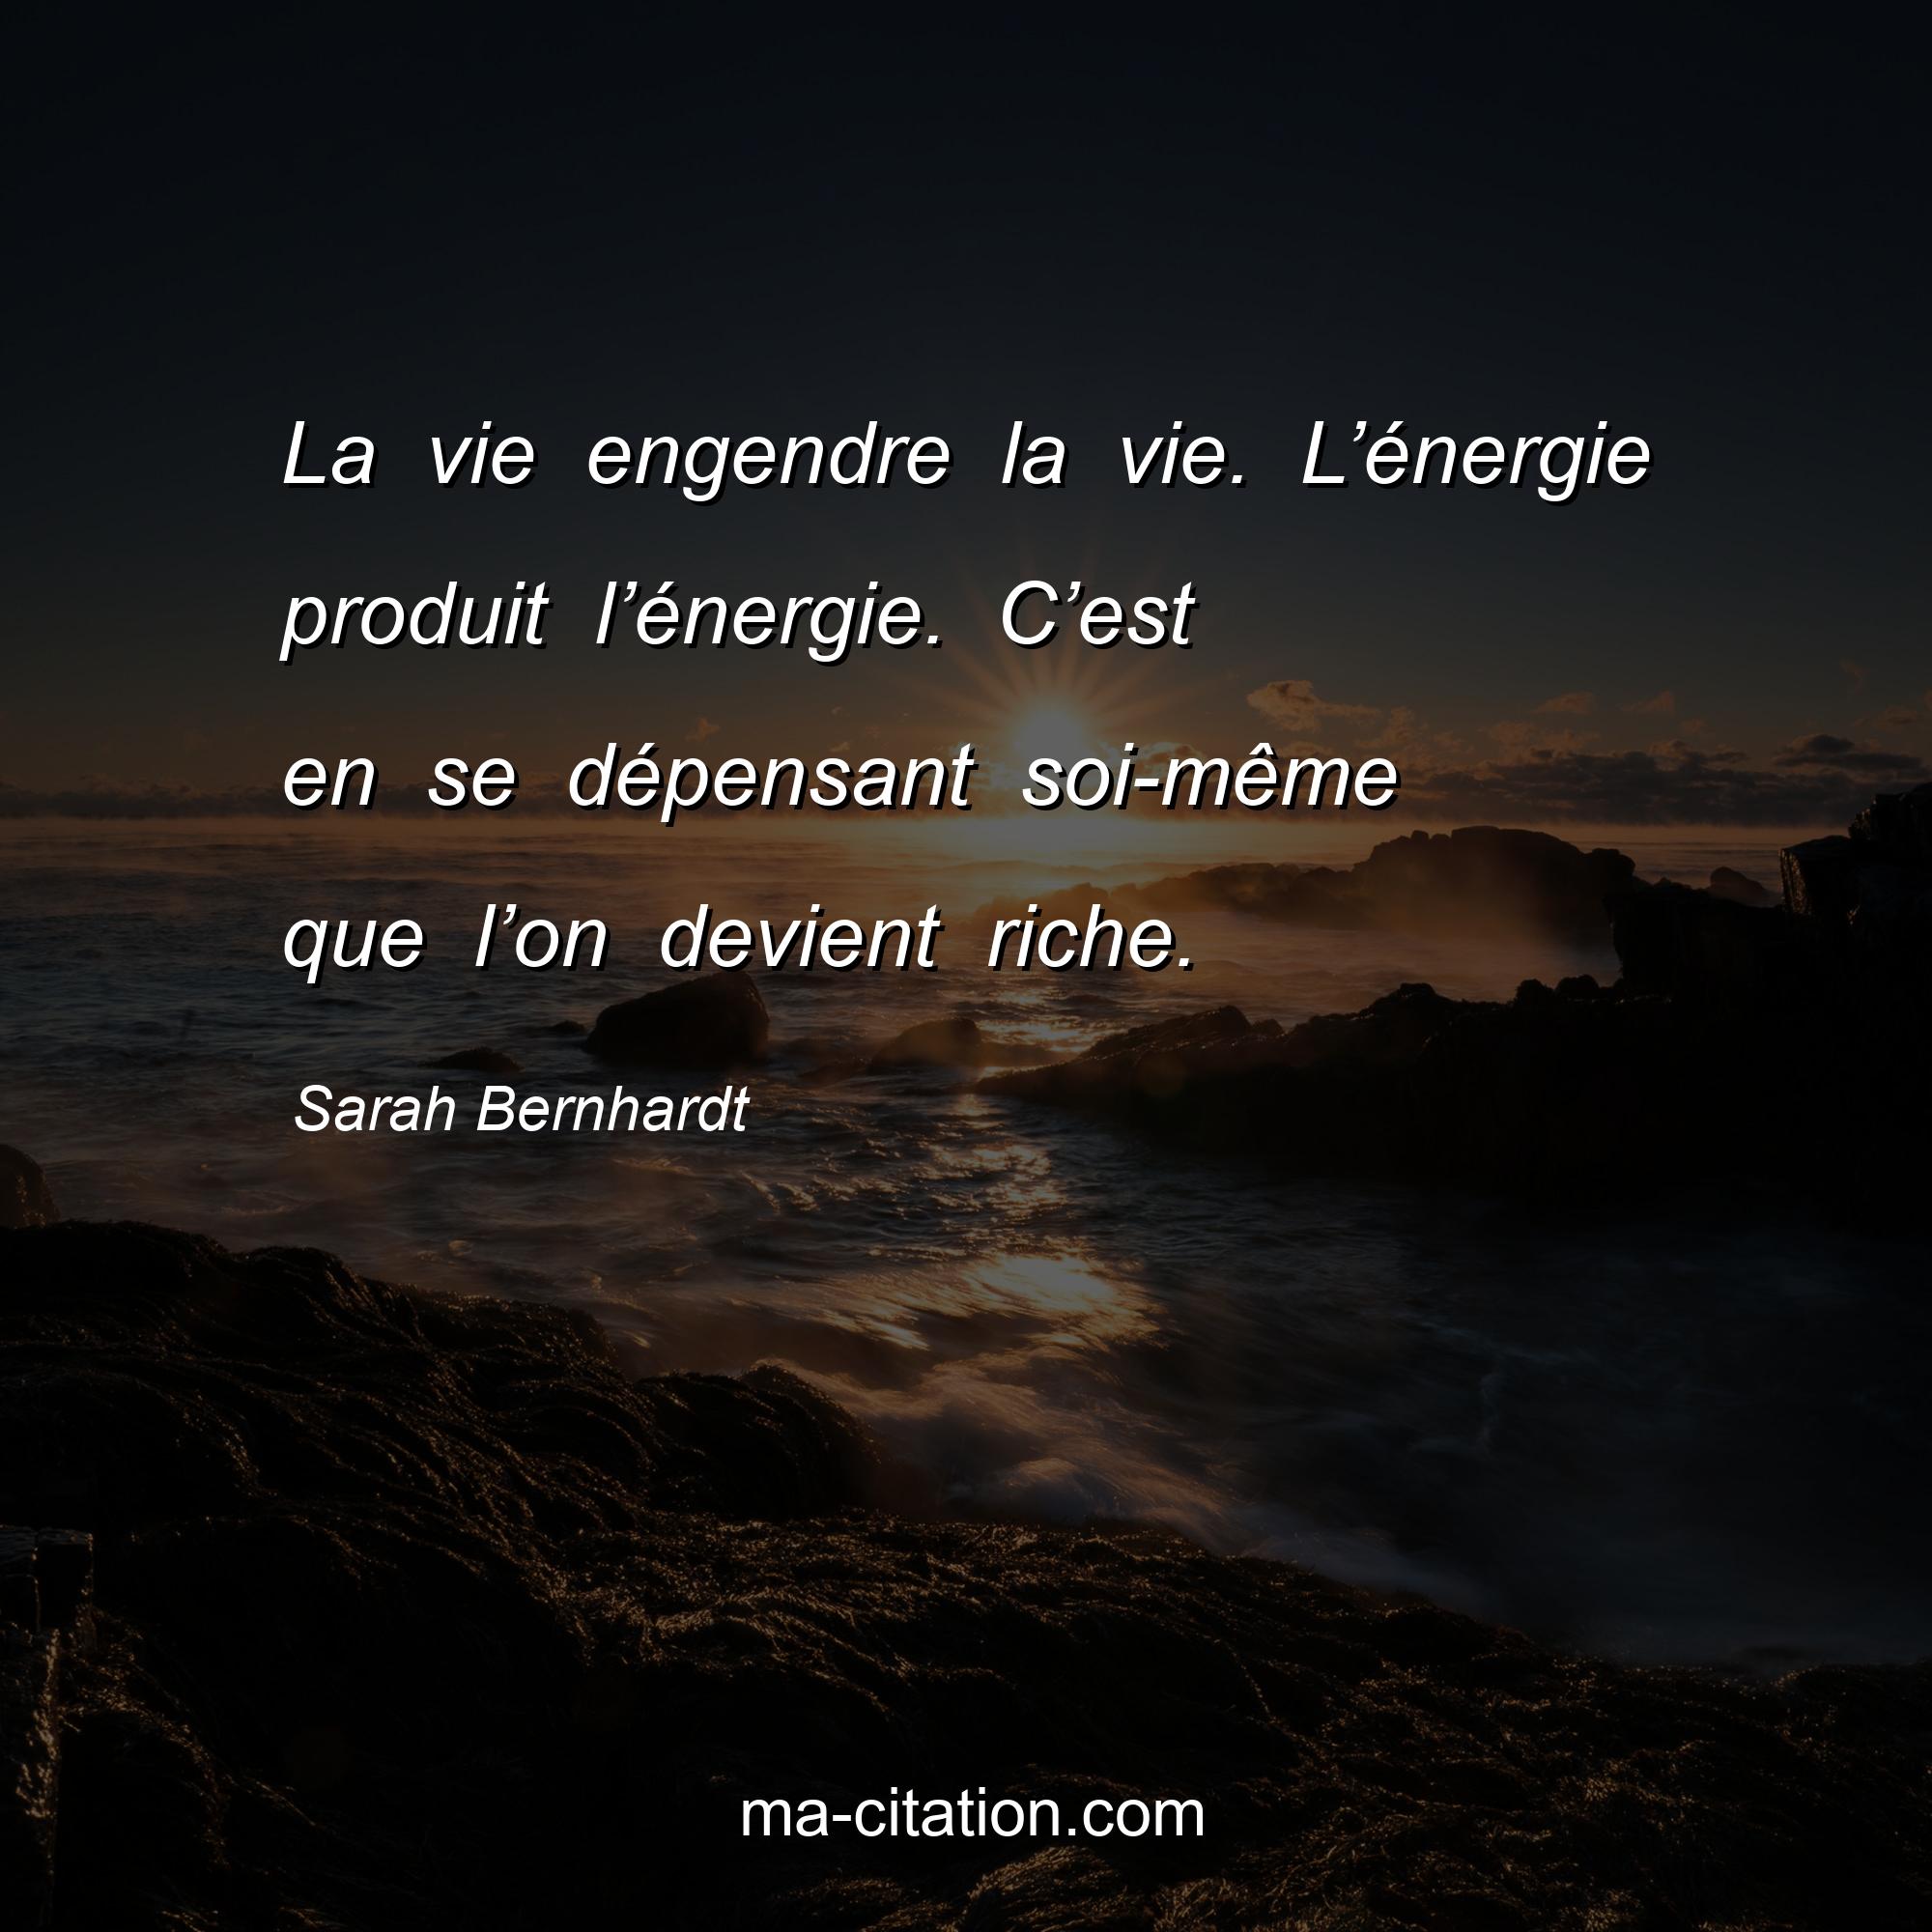 Sarah Bernhardt : La vie engendre la vie. L’énergie produit l’énergie. C’est en se dépensant soi-même que l’on devient riche.